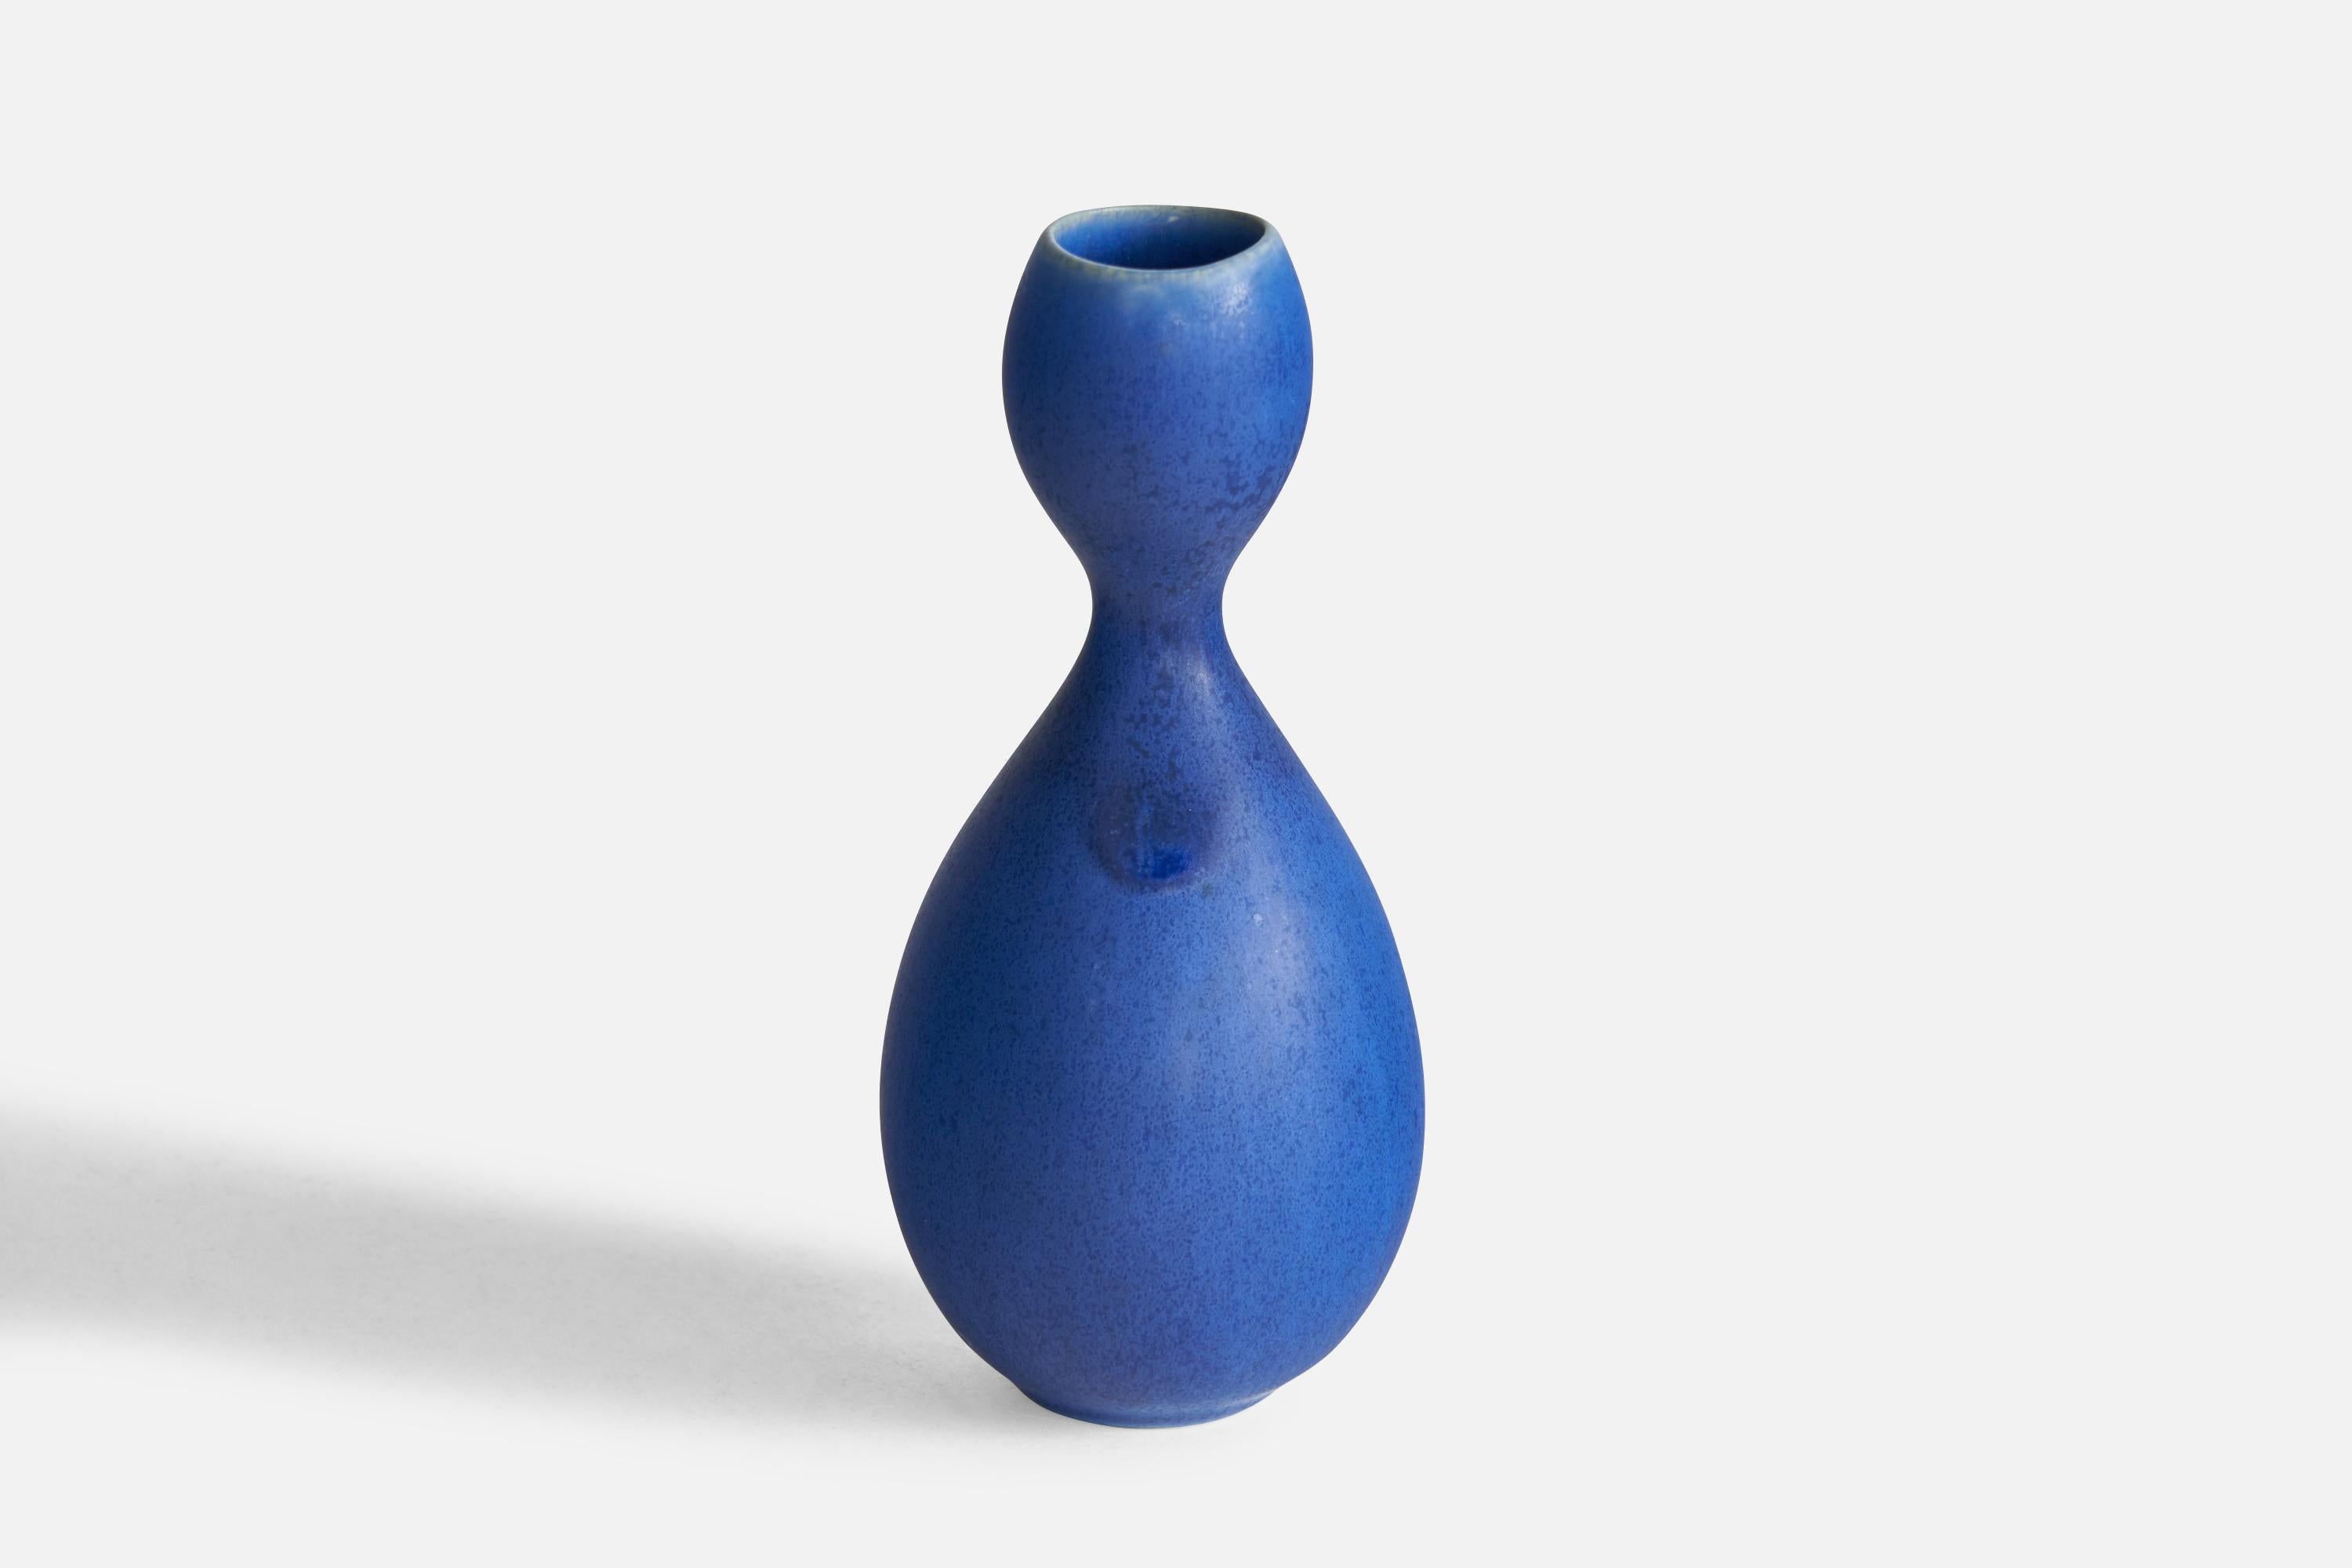 Petit vase organique en céramique émaillée bleue, conçu par Stig Lindberg et produit par Gustavsberg, Suède, années 1950.